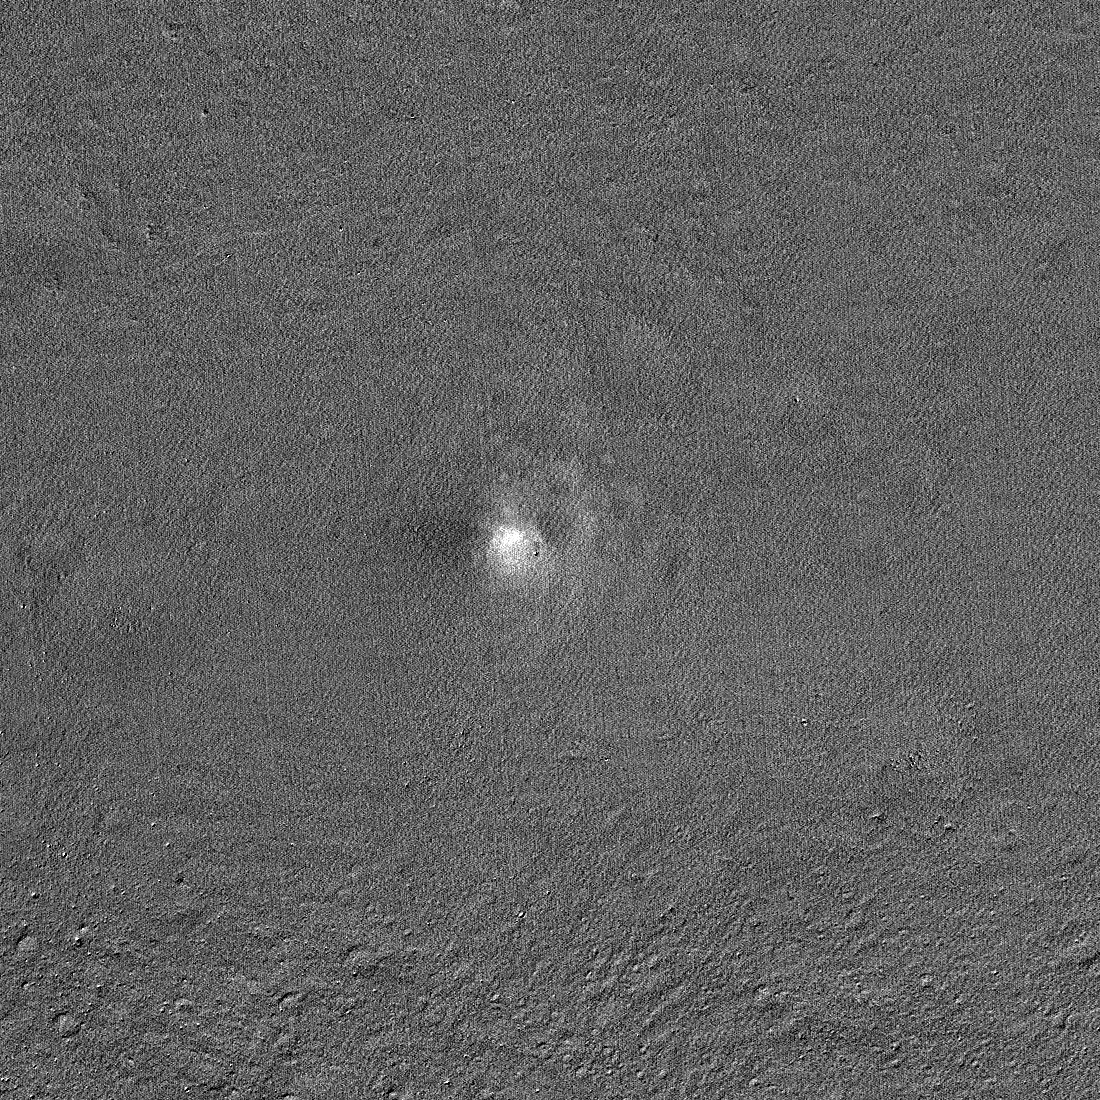 Το τροχιακό της NASA κατασκοπεύει το SLIM προσεδάφιο της Ιαπωνίας κολλημένο στην επιφάνεια του φεγγαριού (φωτογραφία)